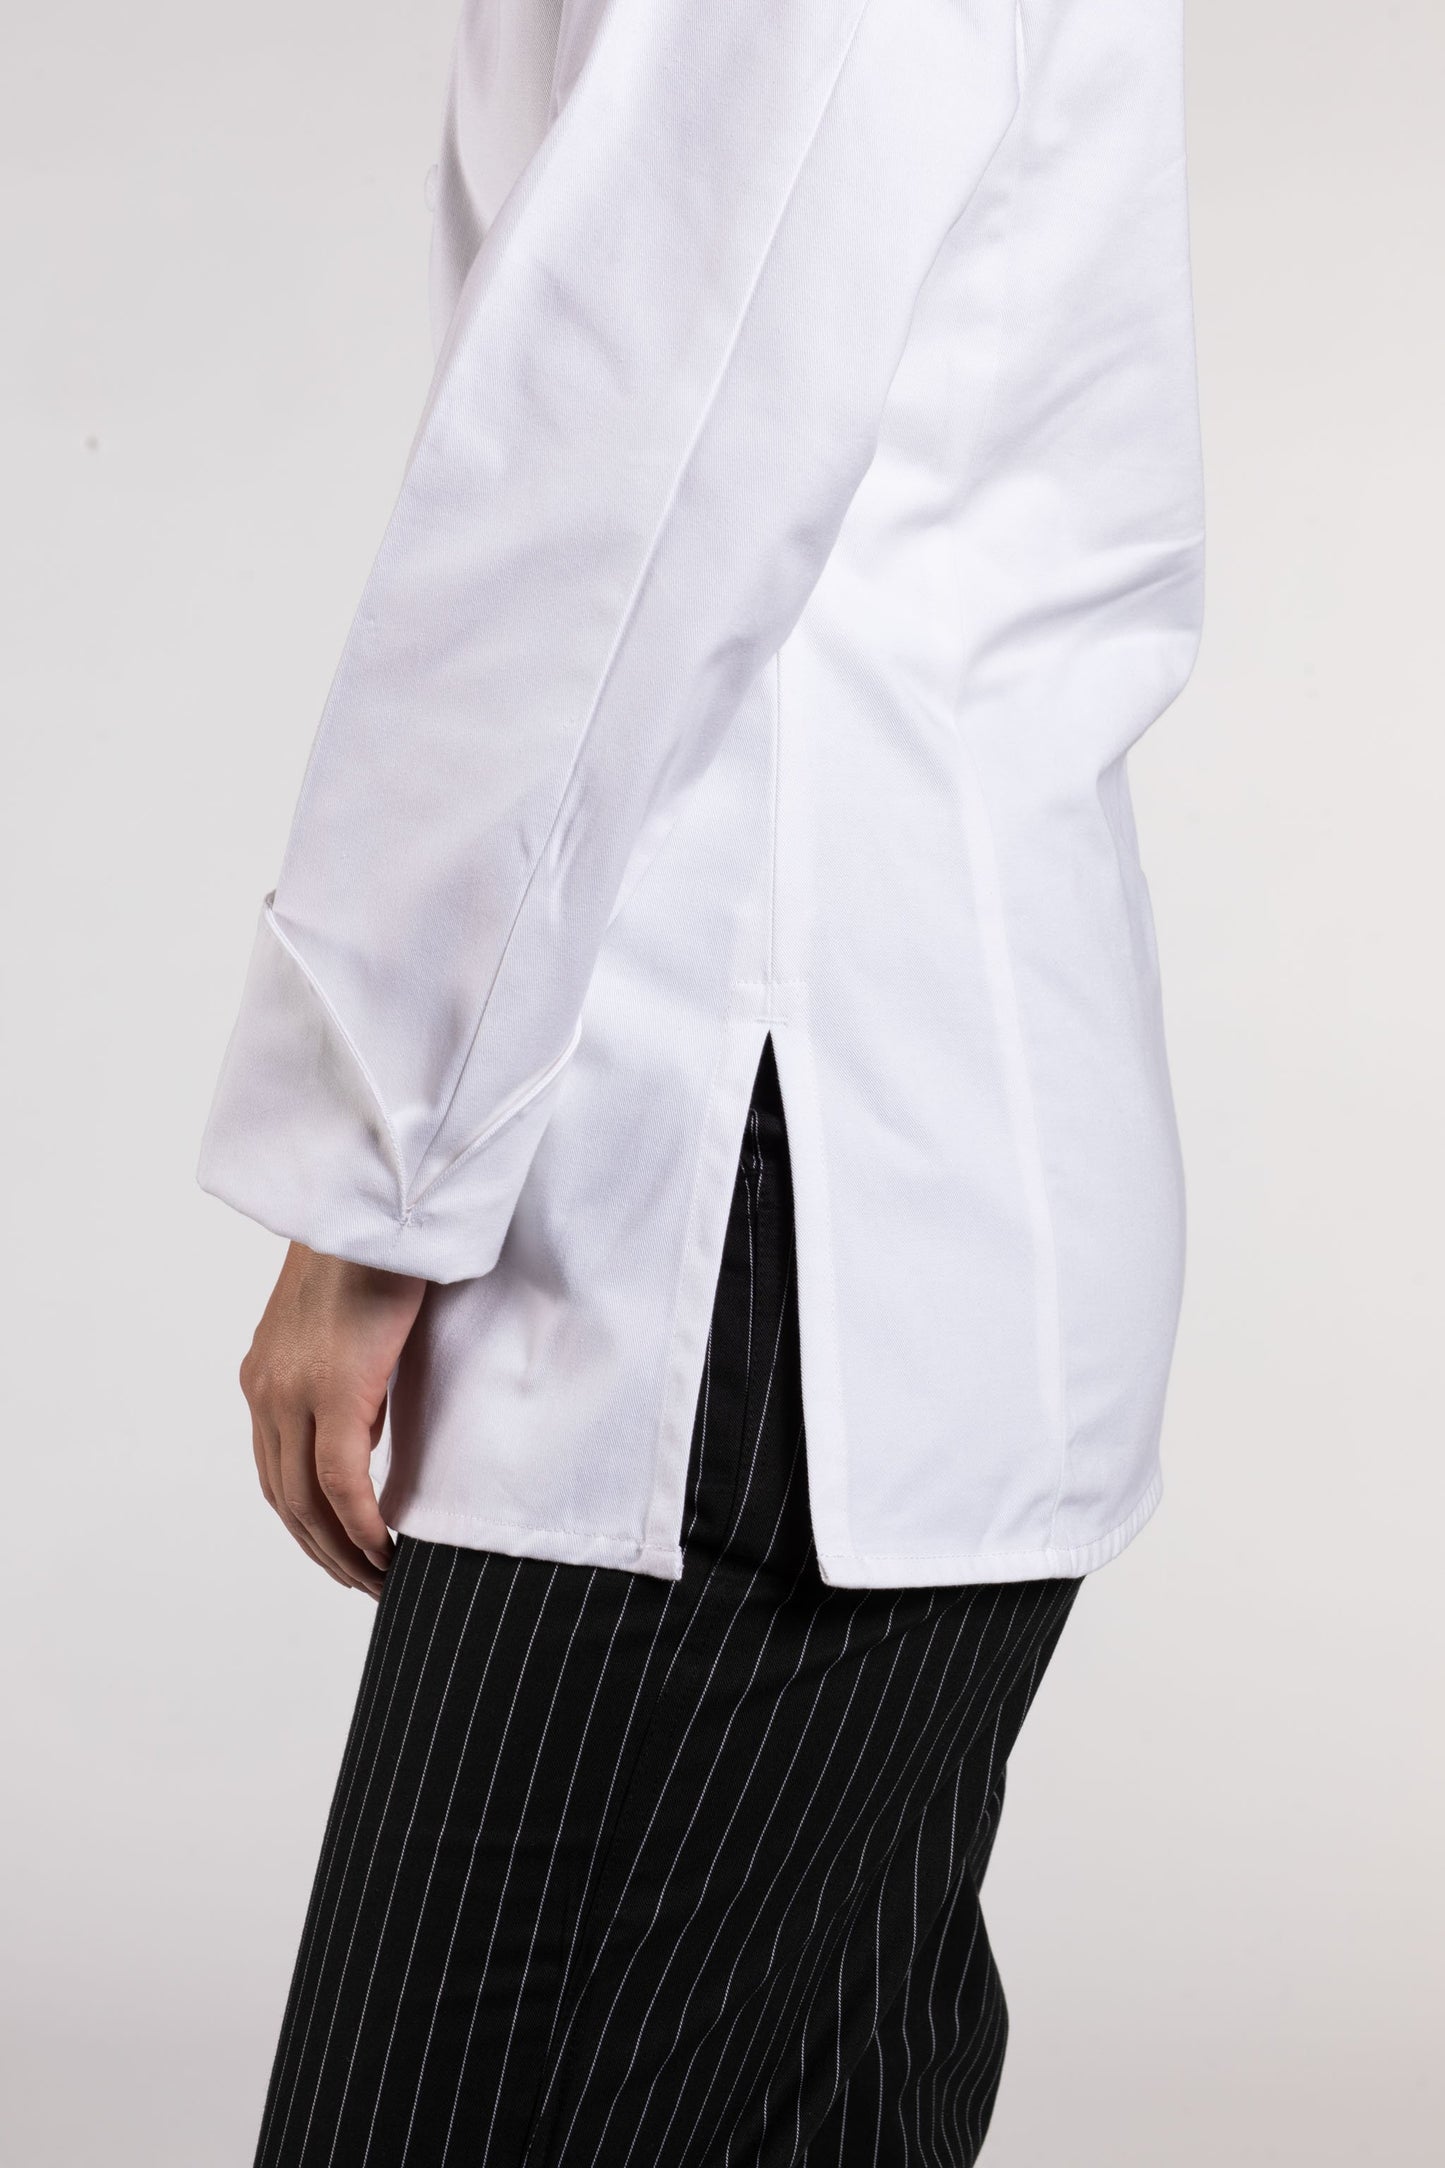 Navona Women's Chef Coat #0470C